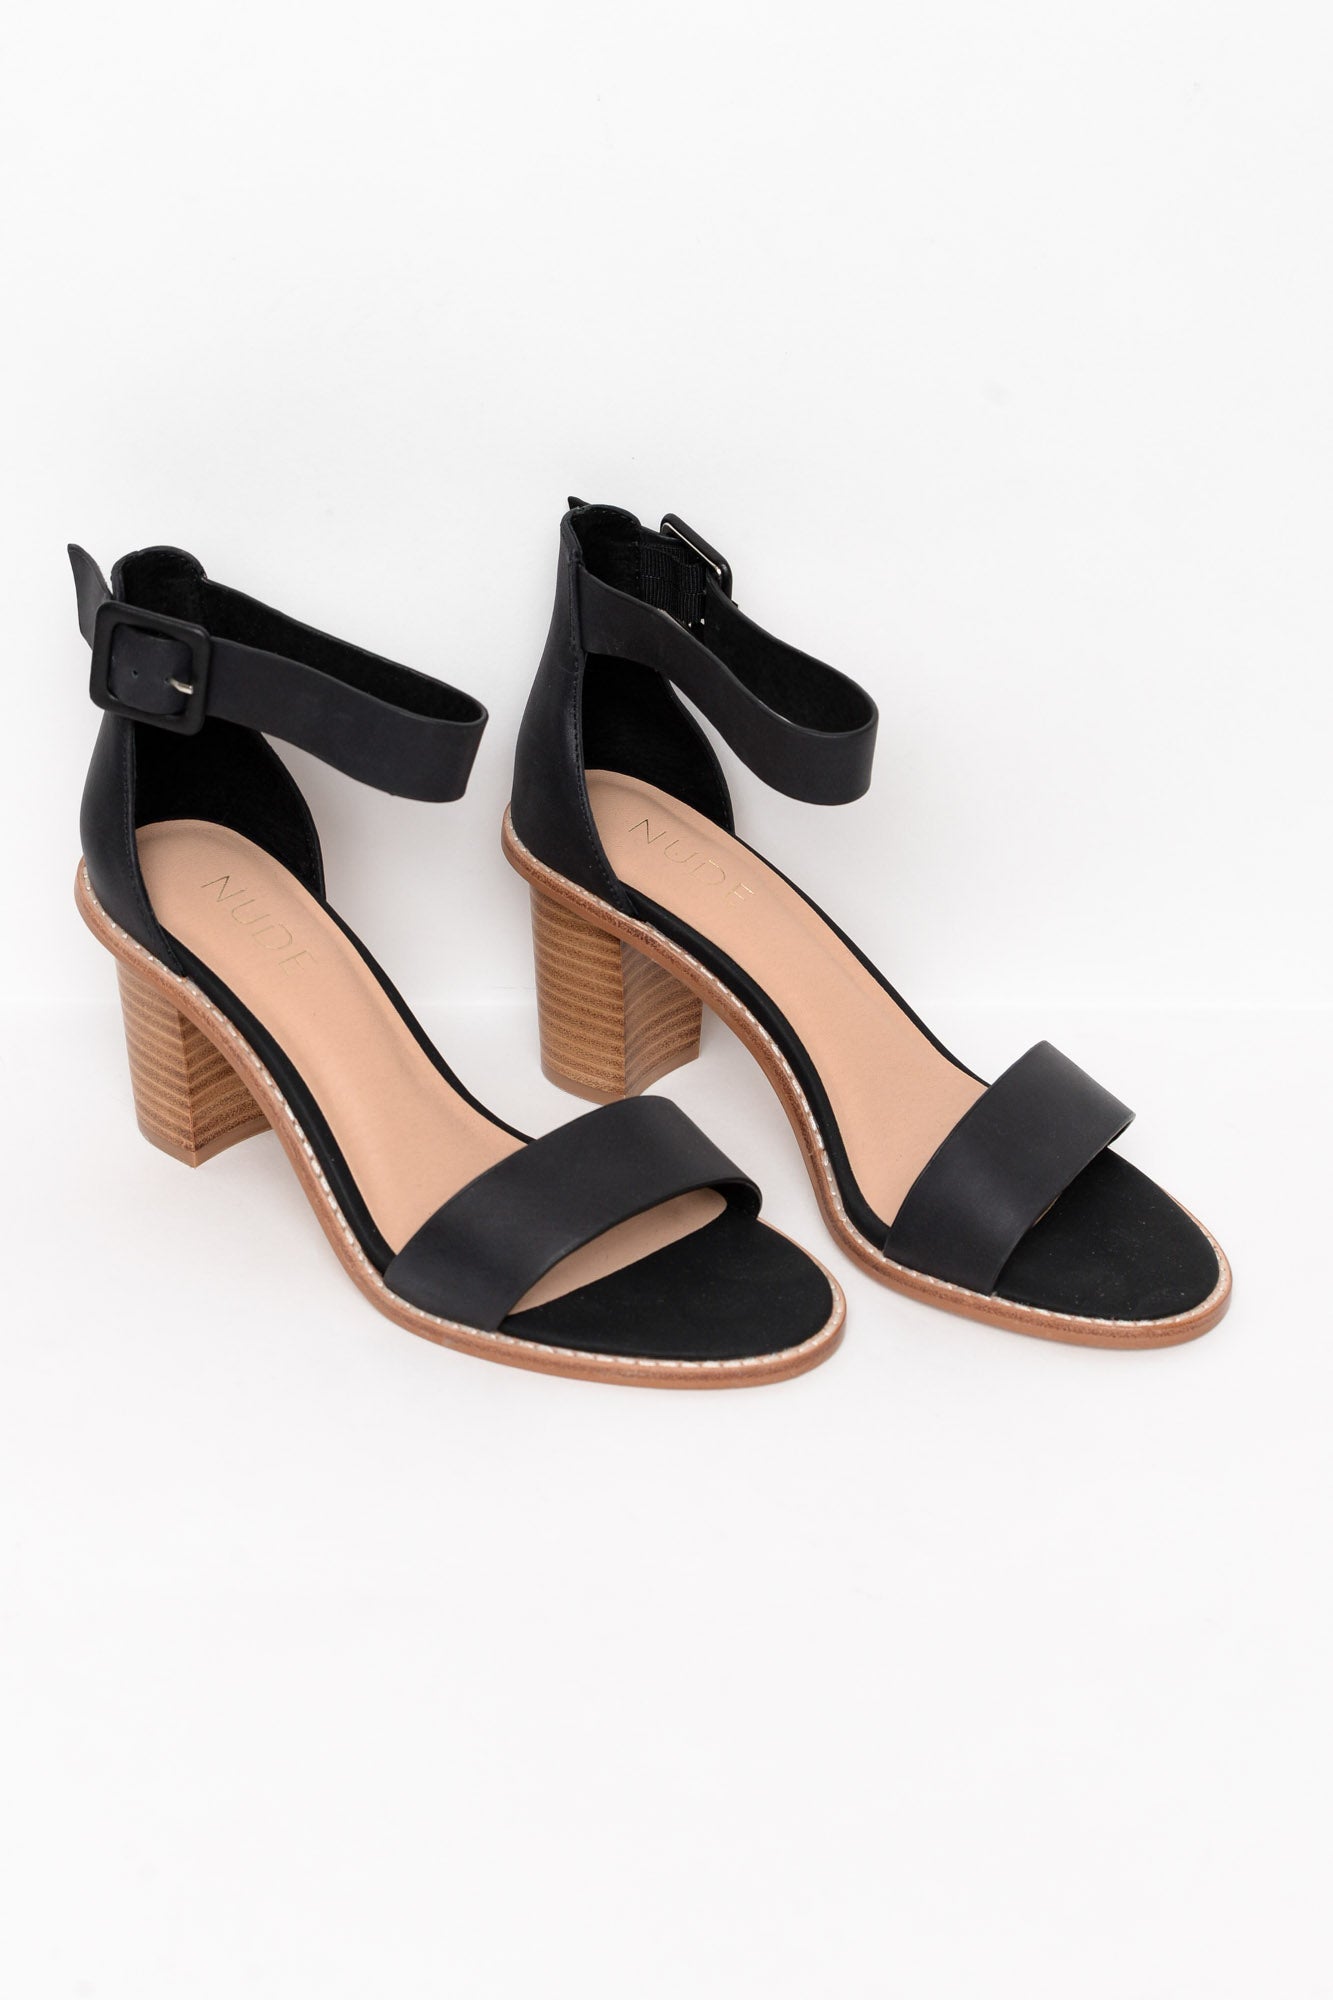 Ky Sandal Heel Rose Gold | Sole Shoes NZ